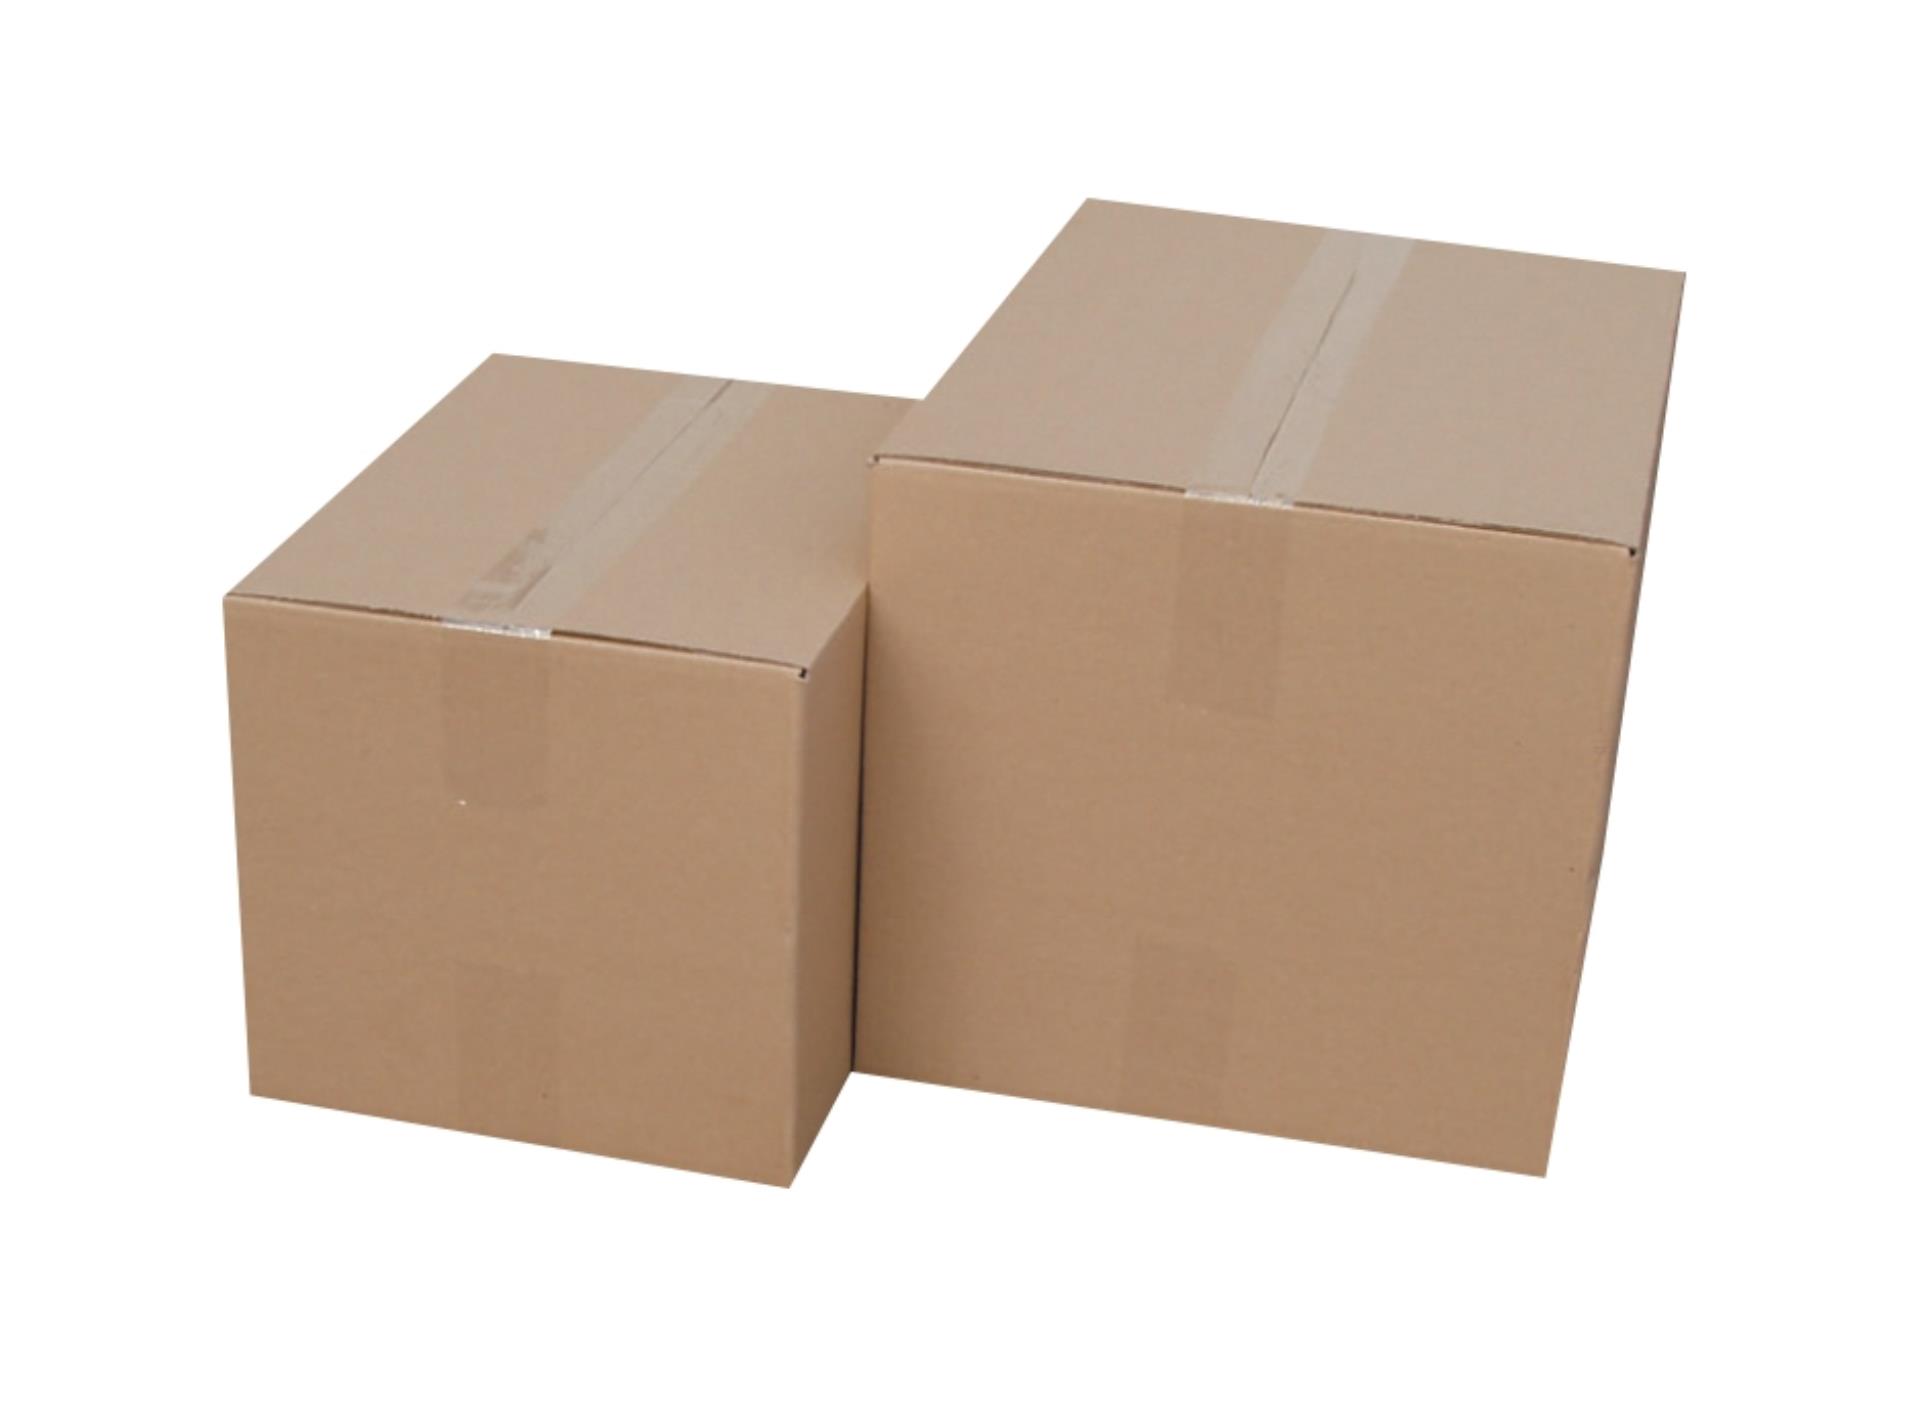 Krabice kartonové 3vrstvé - skladovací, 45,4 x 30,4 x 32,8 cm, 6 kg